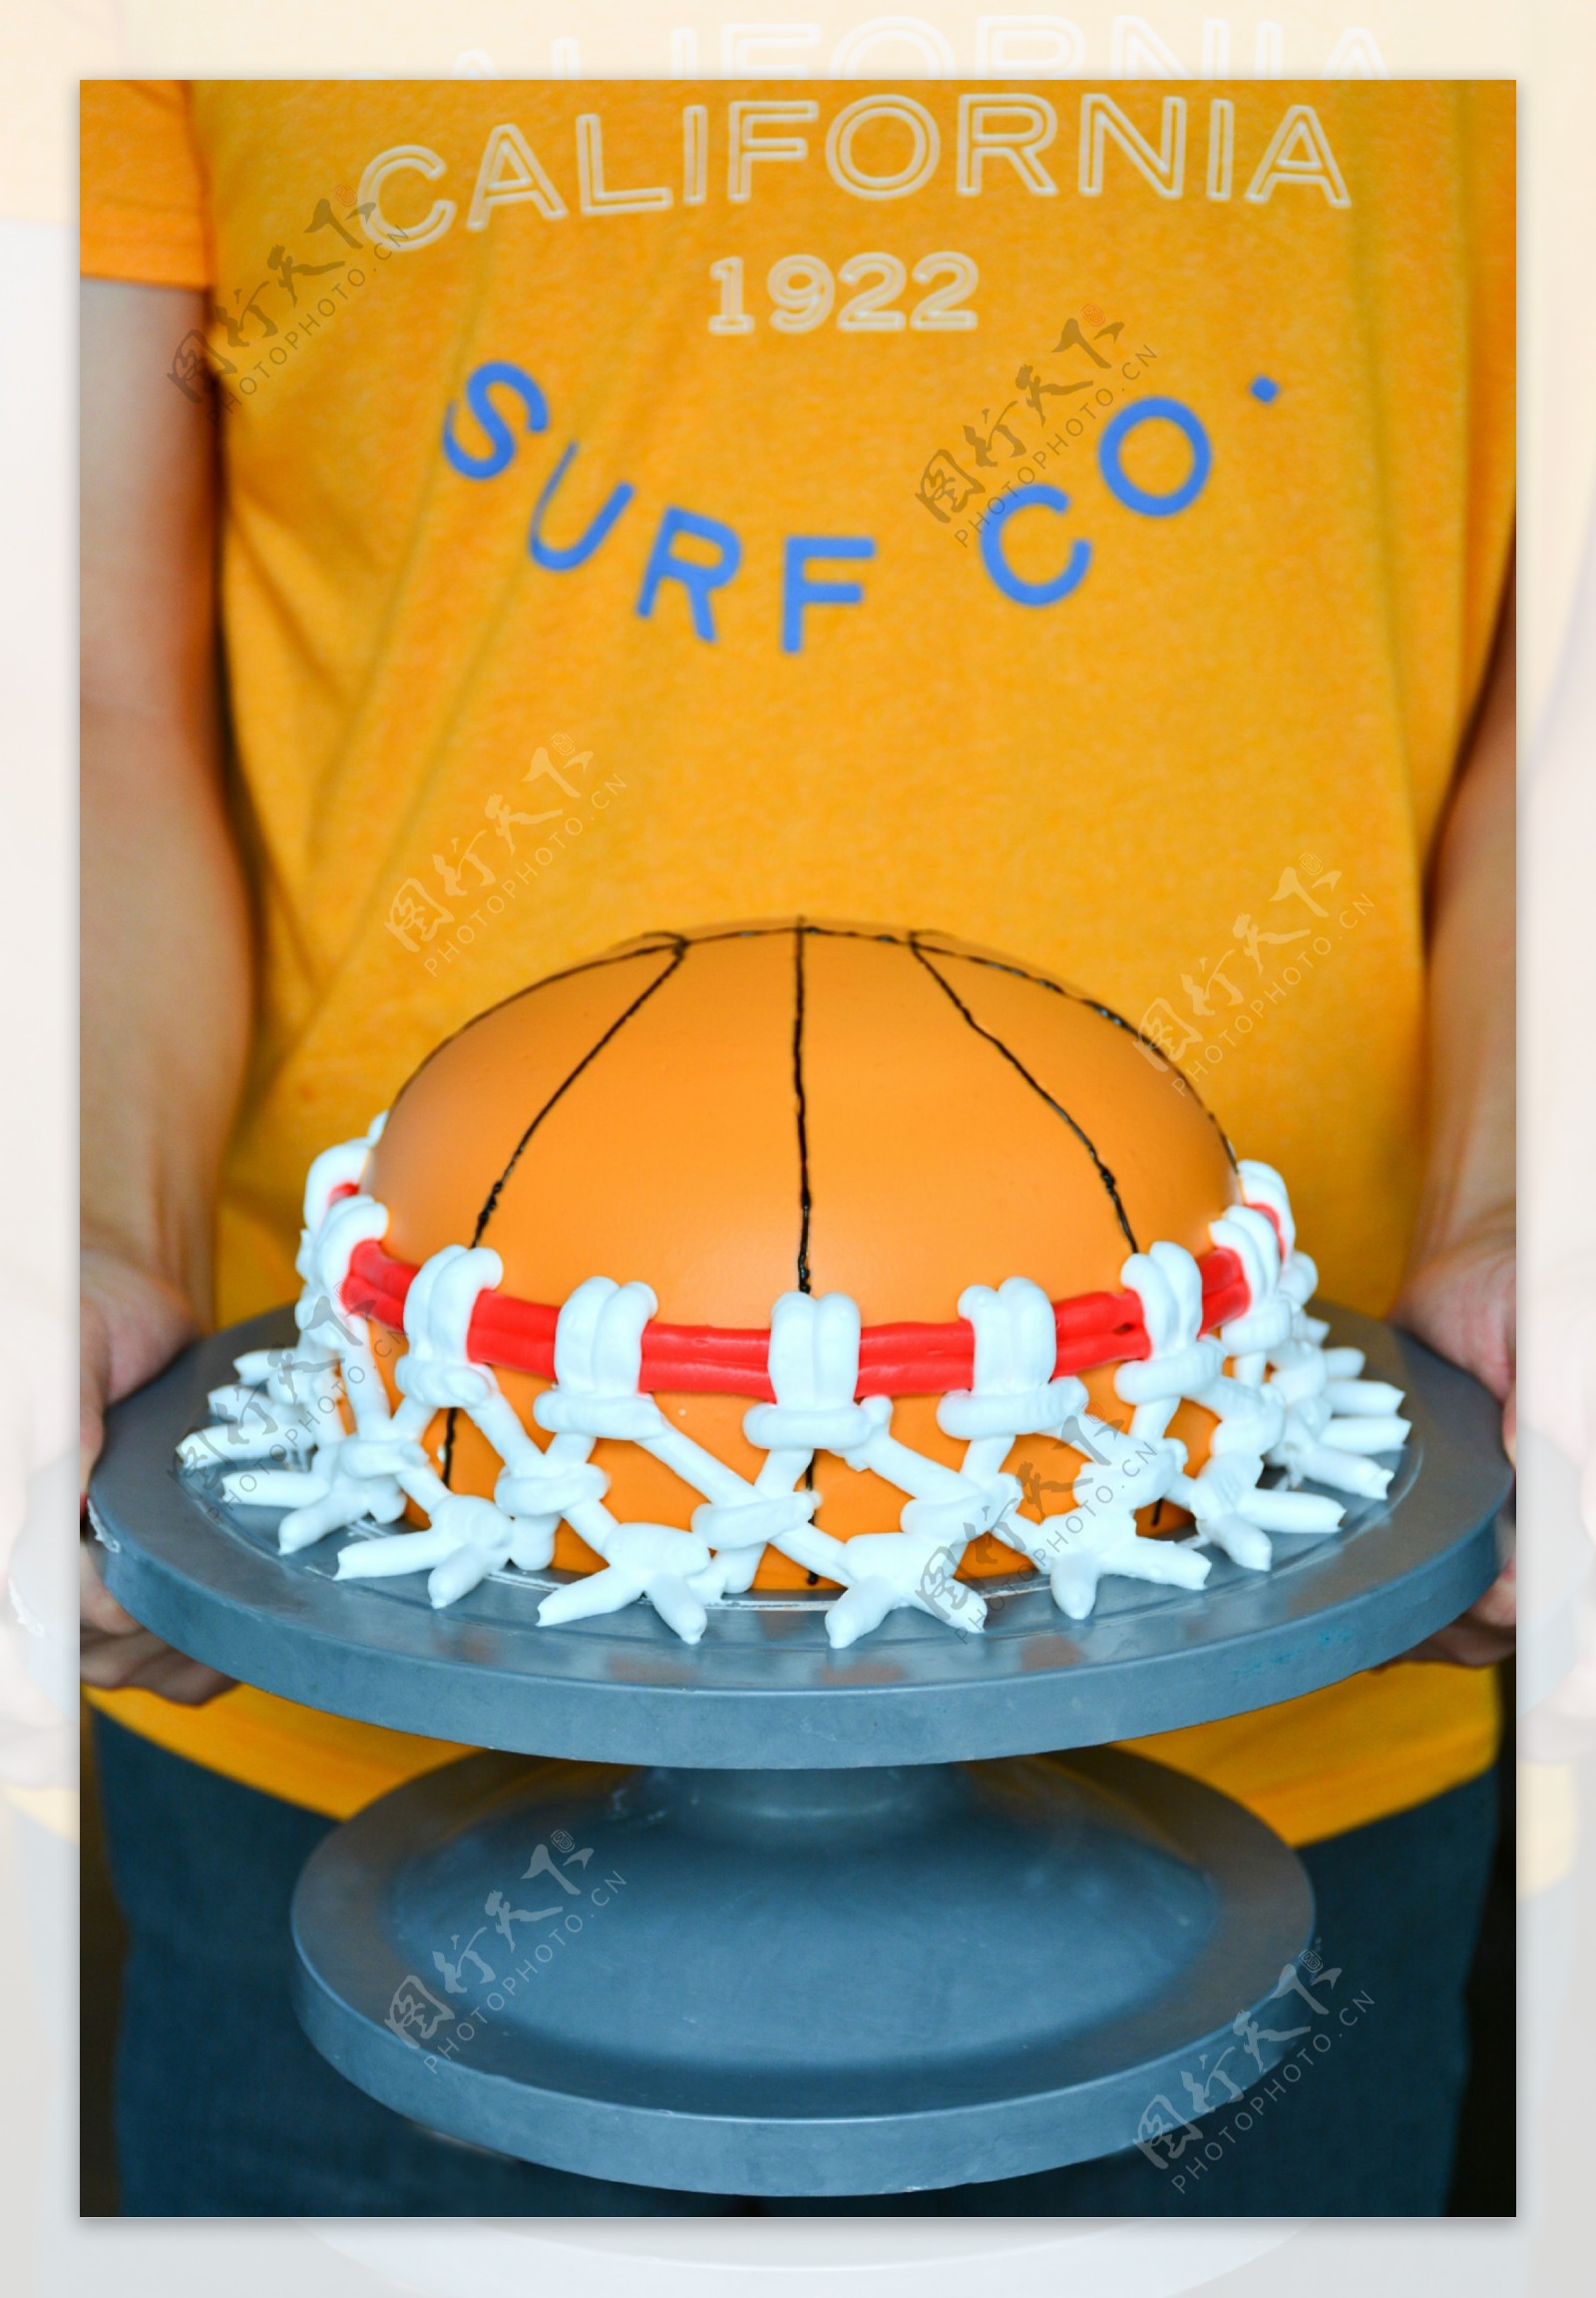 籃球翻糖客製化蛋糕 | 翻糖造型蛋糕 - Daisycafe